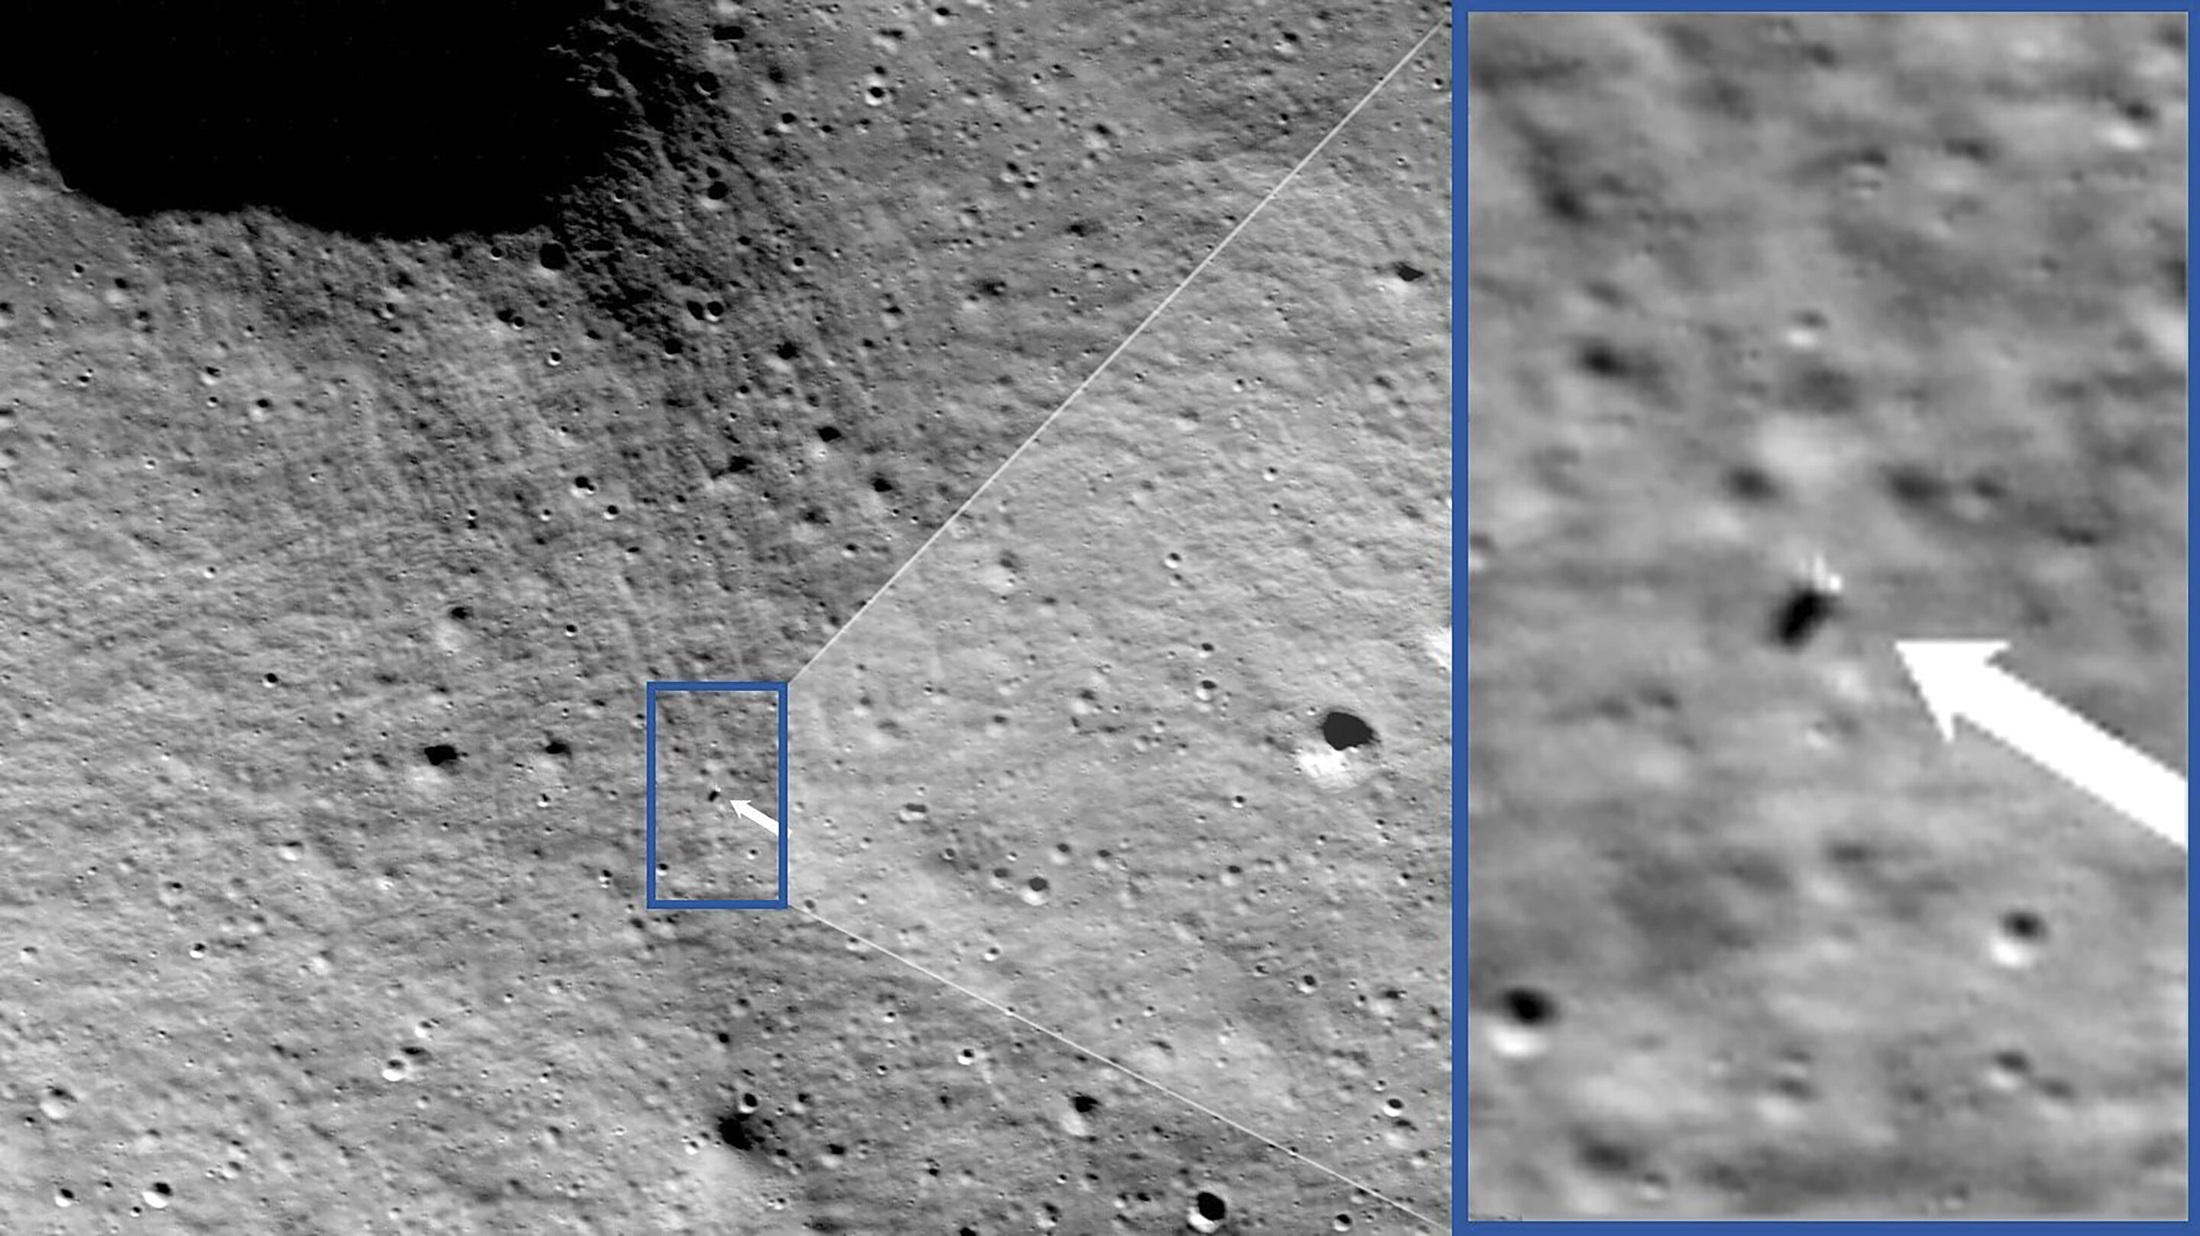 Fotografija iz orbite prikazuje Američki lander na površini Mjeseca.